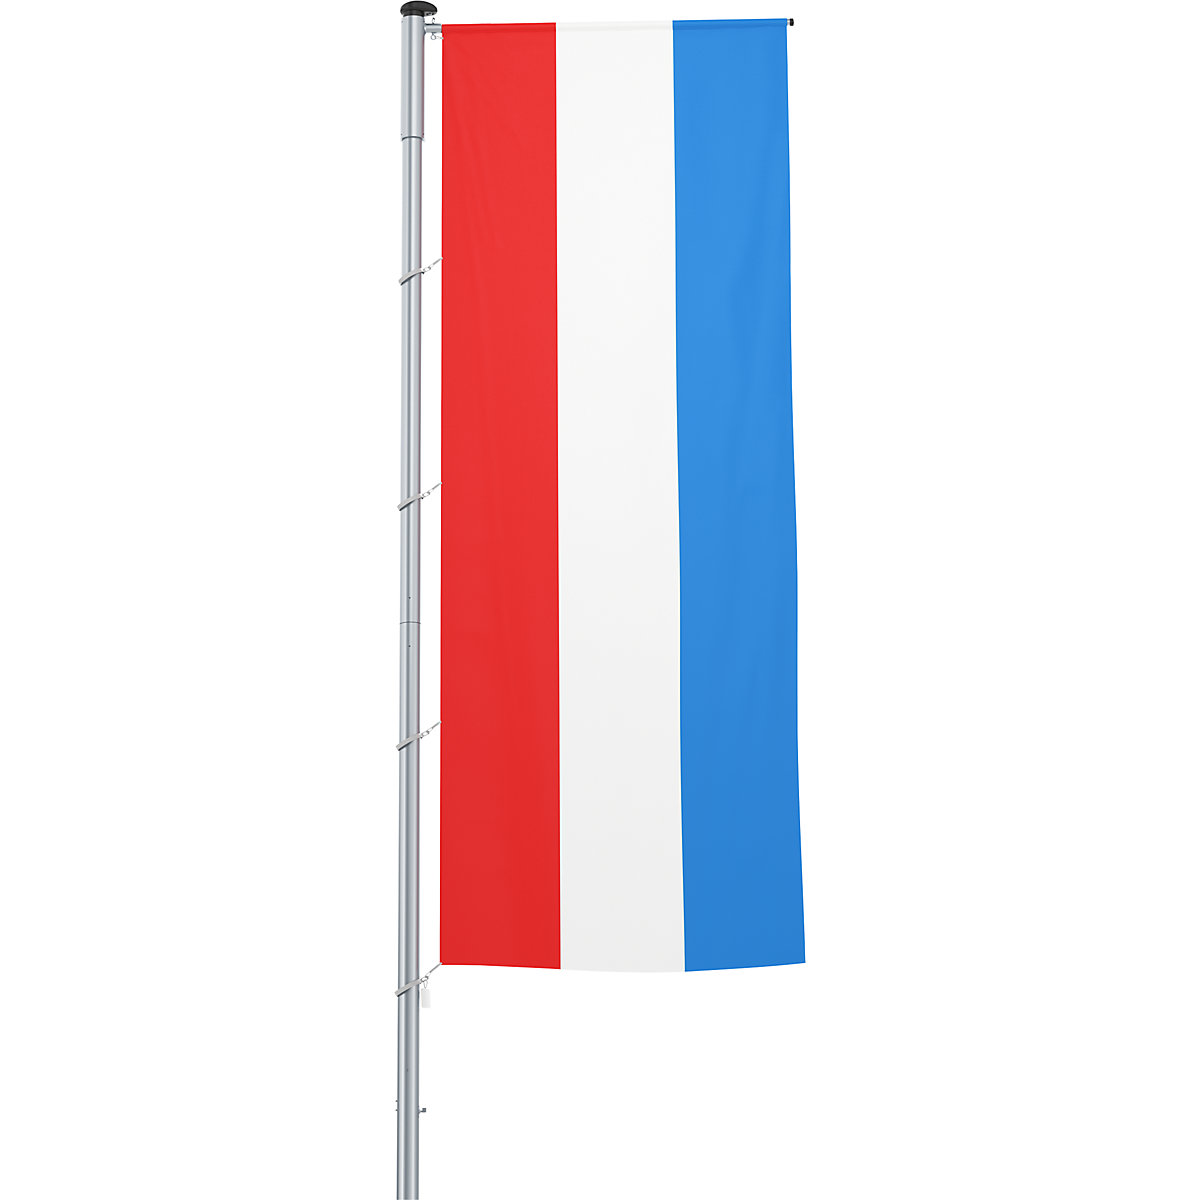 Gémes zászló/országzászló – Mannus, méret 1,2 x 3 m, Luxemburg-7